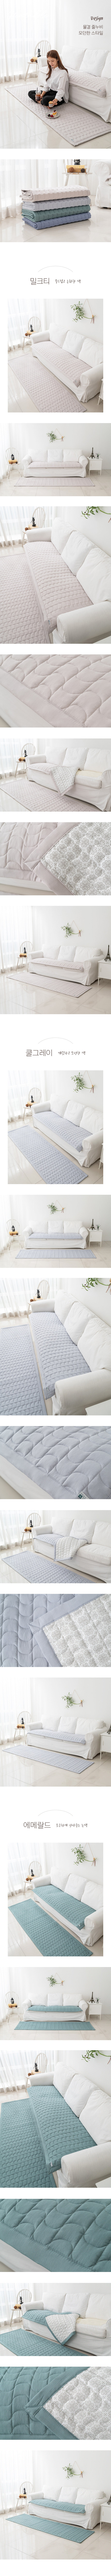 흡습발열성 누빔 소파 패드 180230(cm) Moisture-wicking Fabric Quilted Sofa Pad